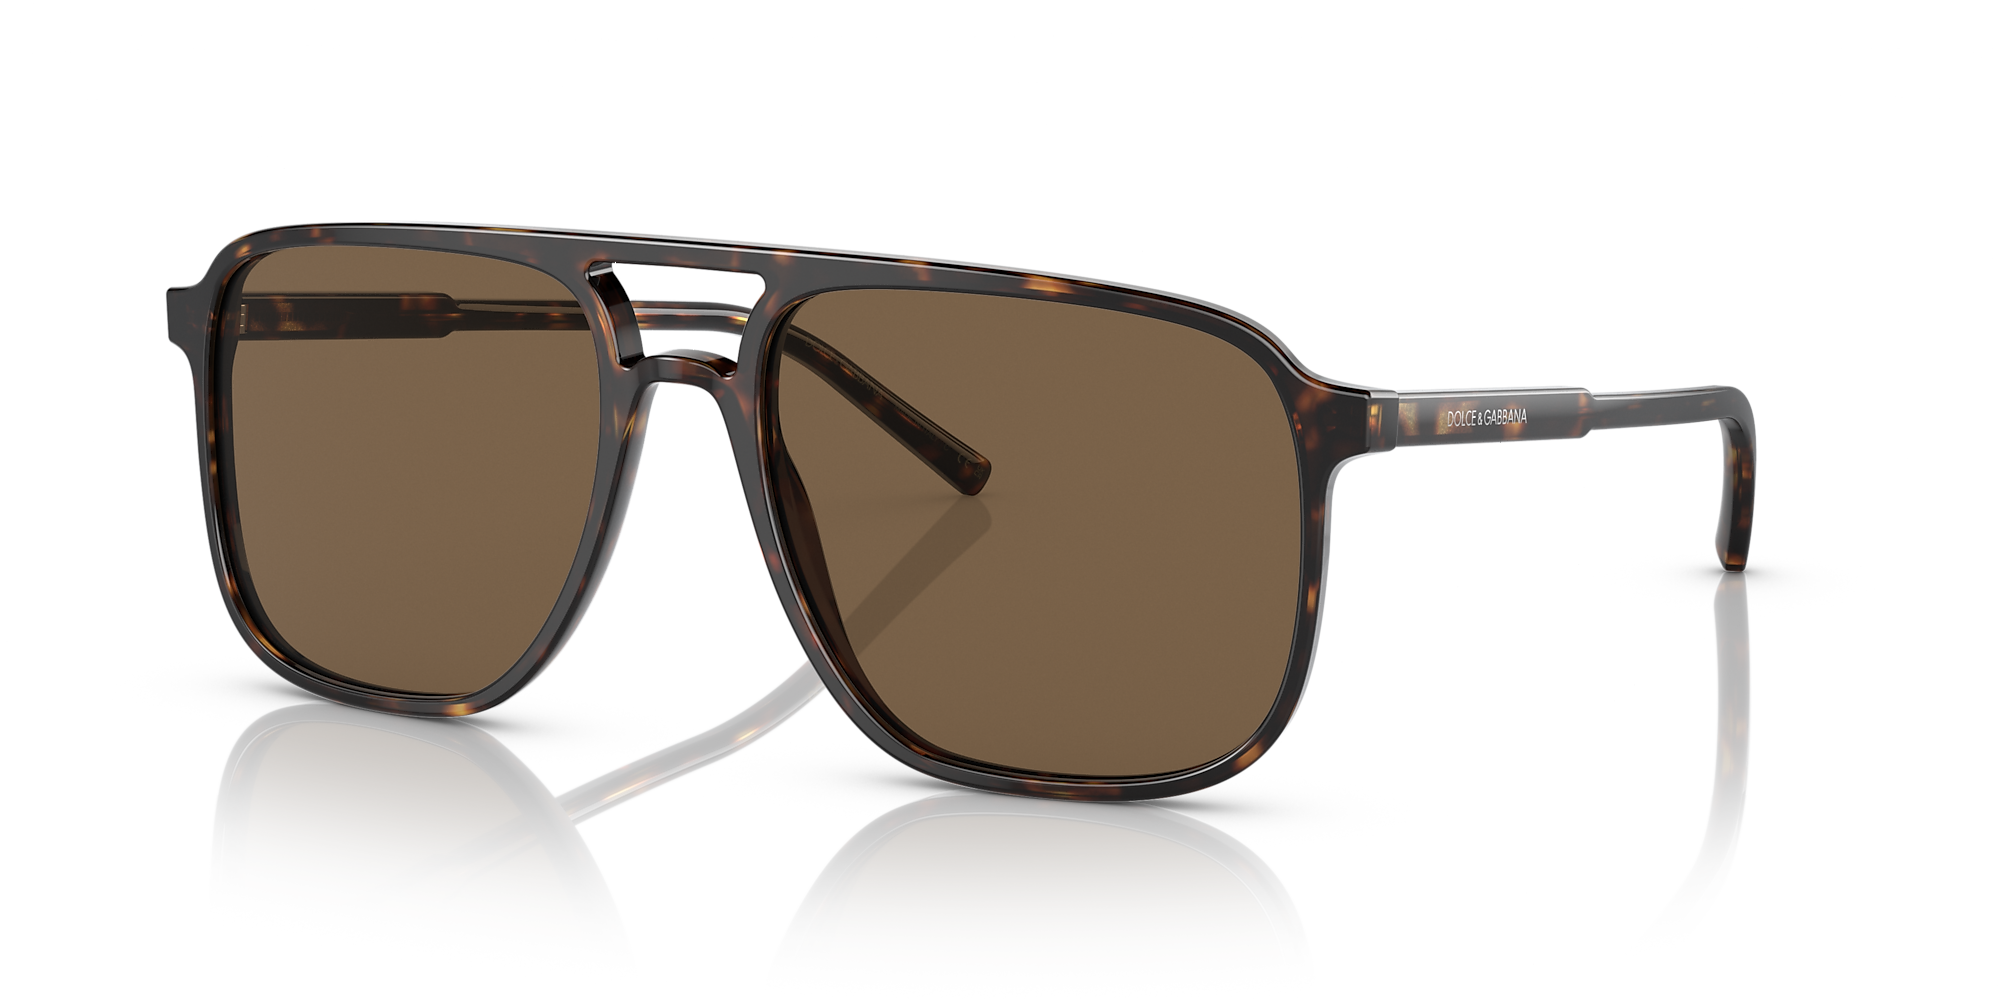 Dolce&Gabbana DG4423 58 Dark Brown & Havana Sunglasses | Sunglass Hut USA